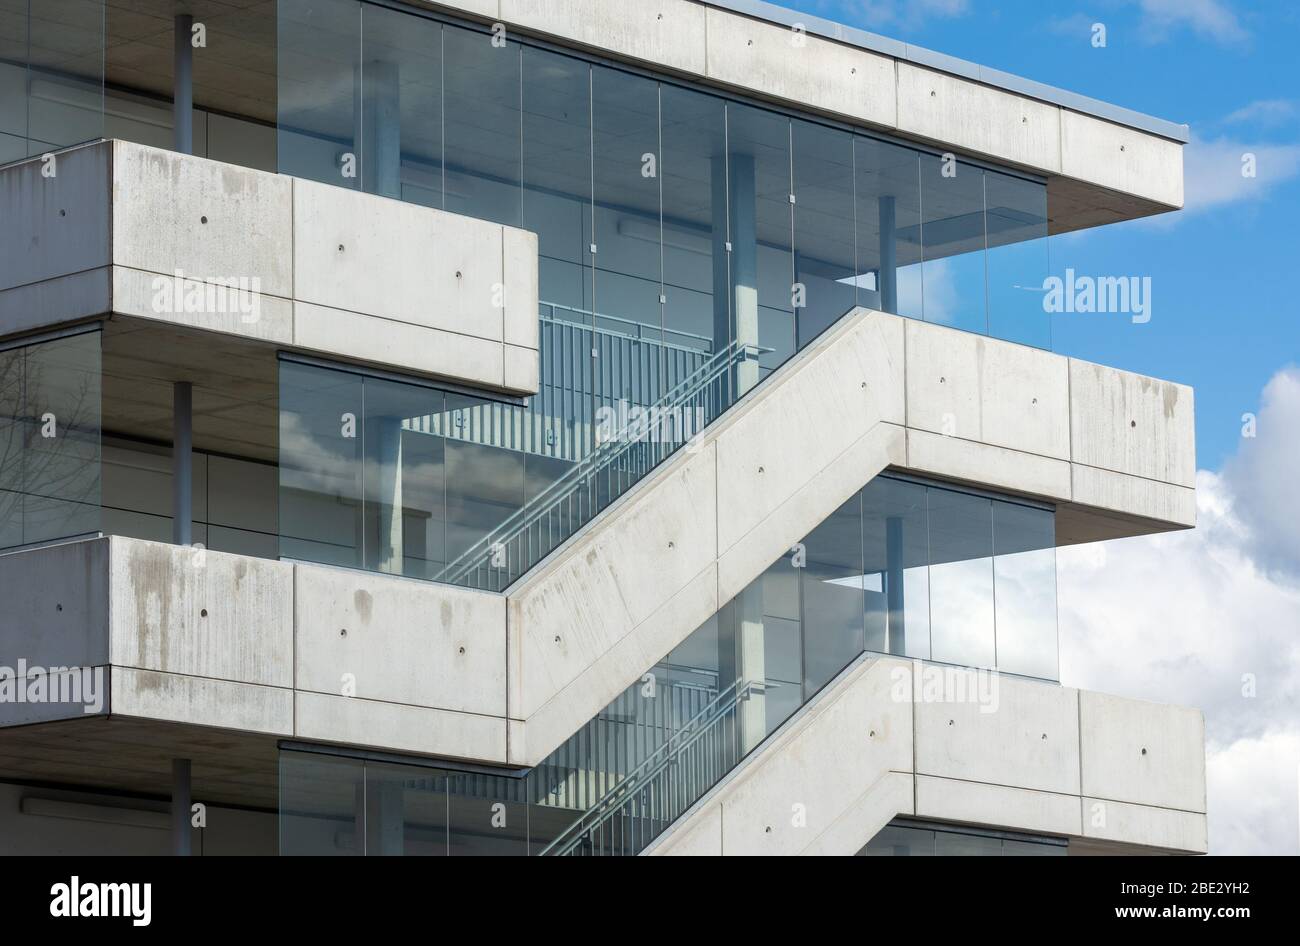 Escaleras Exteriores De Un Edificio Moderno Con Vidrio Fotografia De Stock Alamy